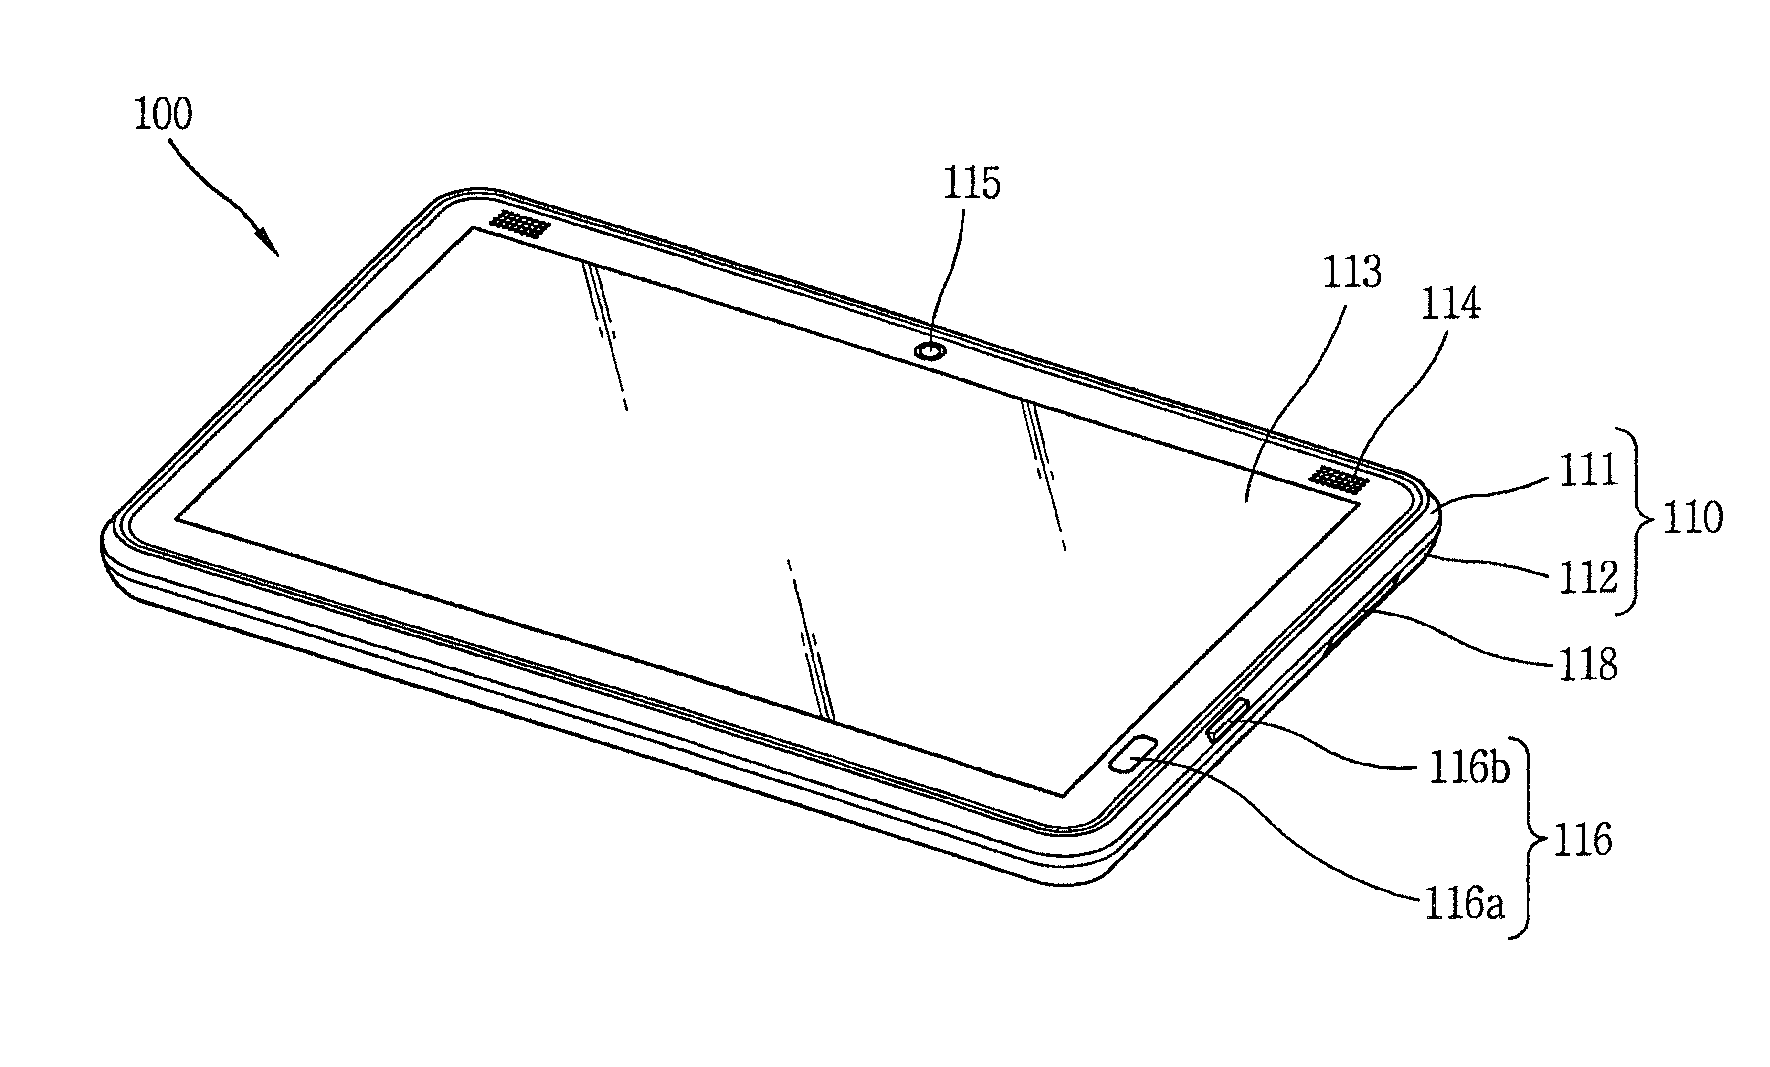 Portable electronic apparatus